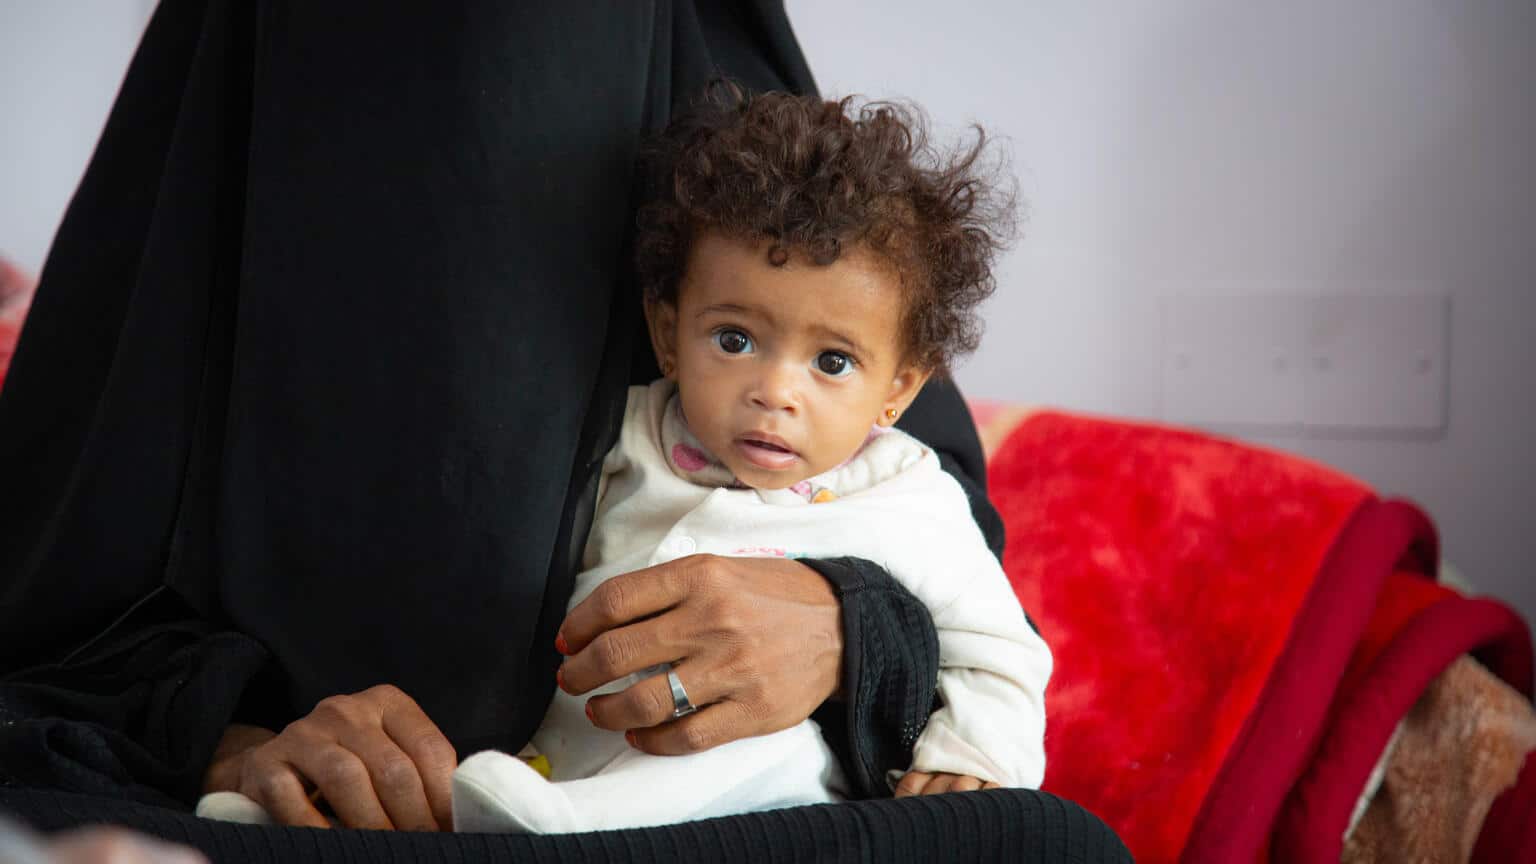 Maryam tient dans ses bras sa fille Anisa, âgée de 9 mois, dans le service de nutrition de l'hôpital Hamdan, à SanaÕa, au Yémen, le 11 octobre 2021. ©UNICEF/UN0536620/Haleem